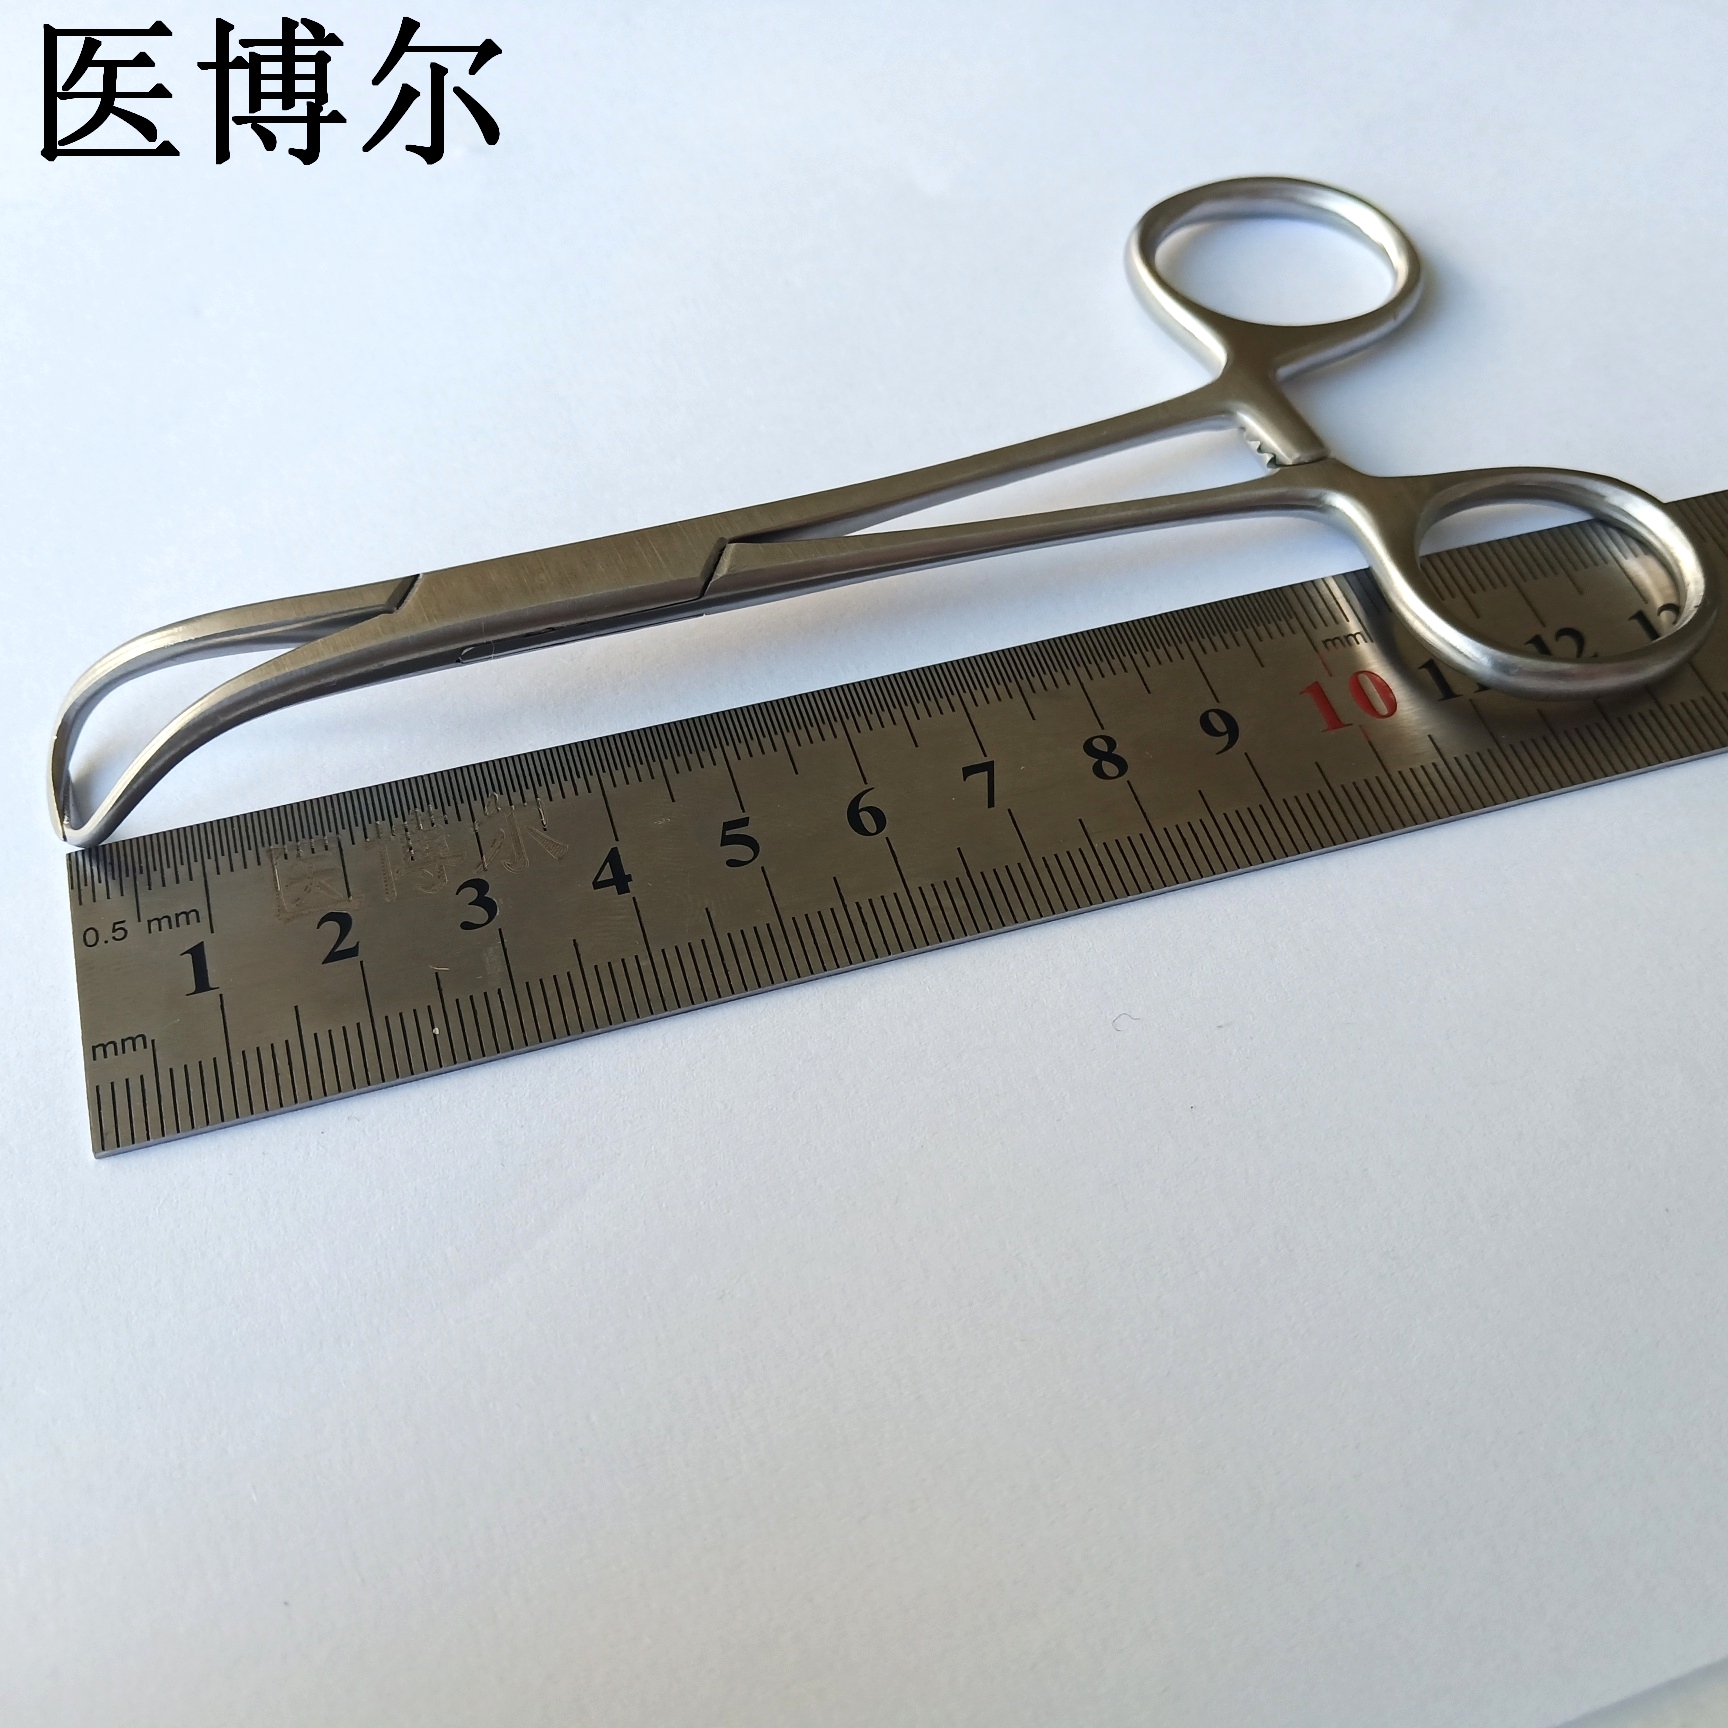 帕巾钳 13.5cm (3)_看图王.jpg